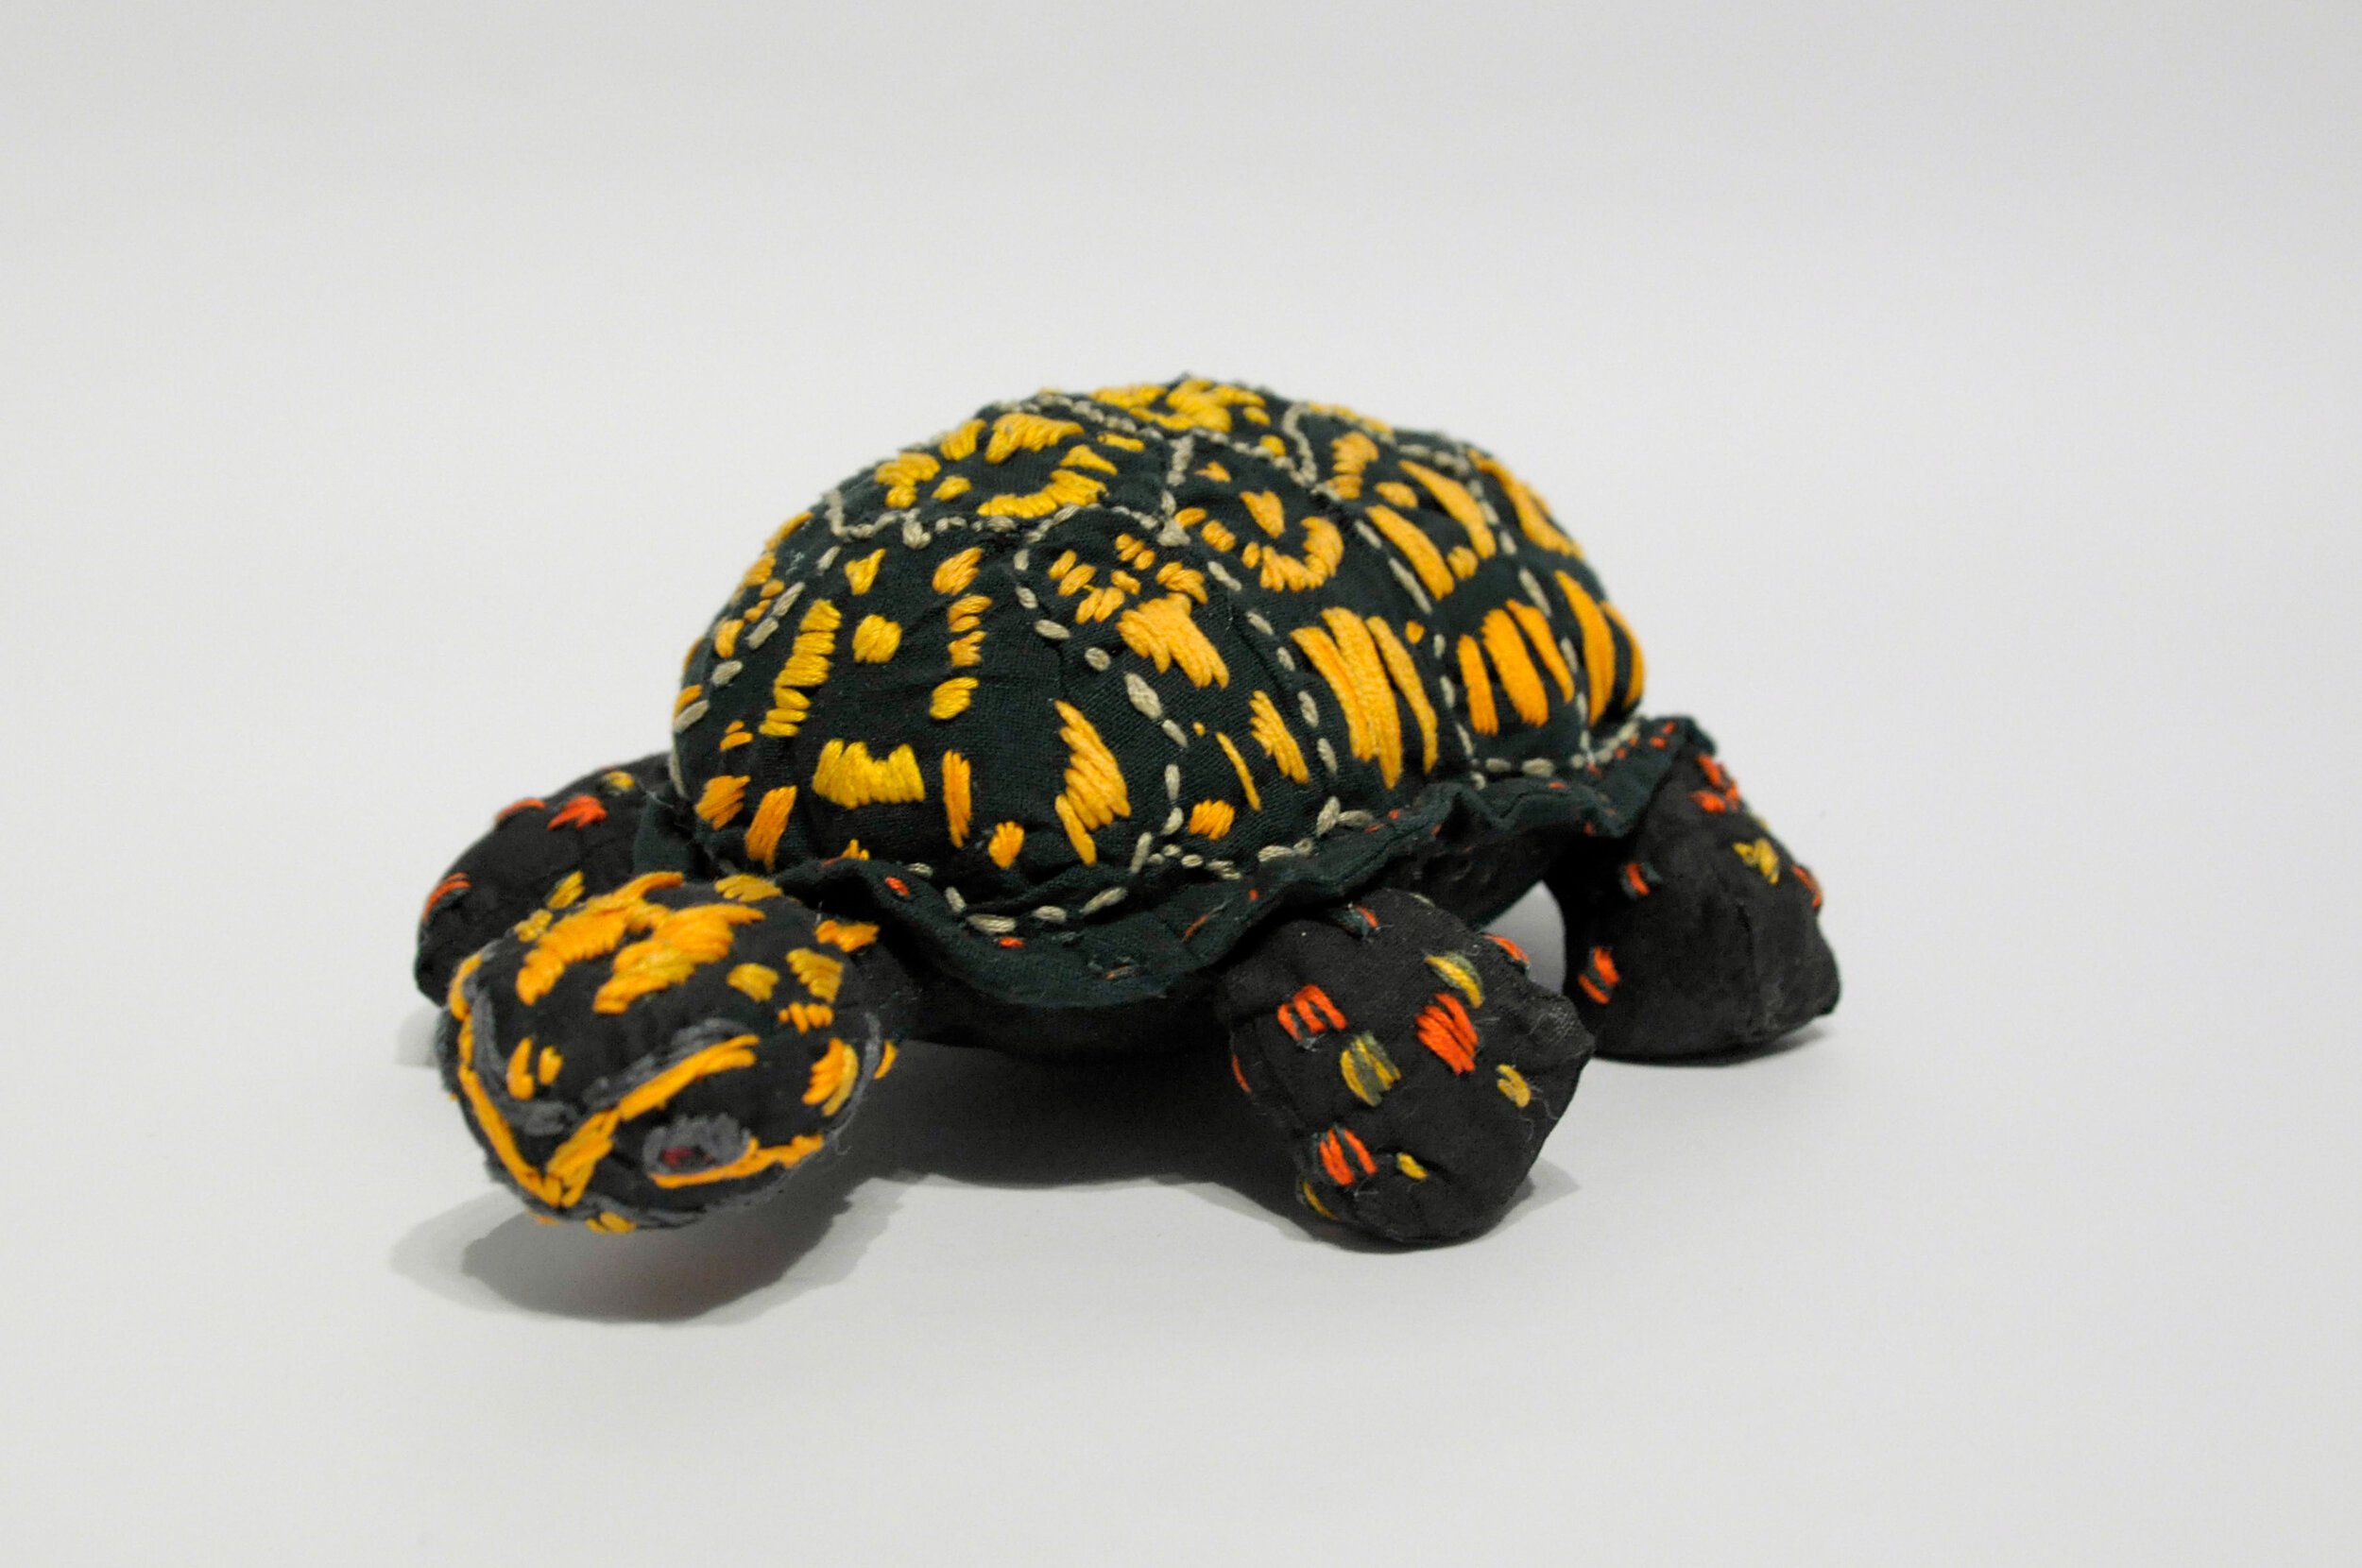  Eastern Box Turtle by Julia Kinney 